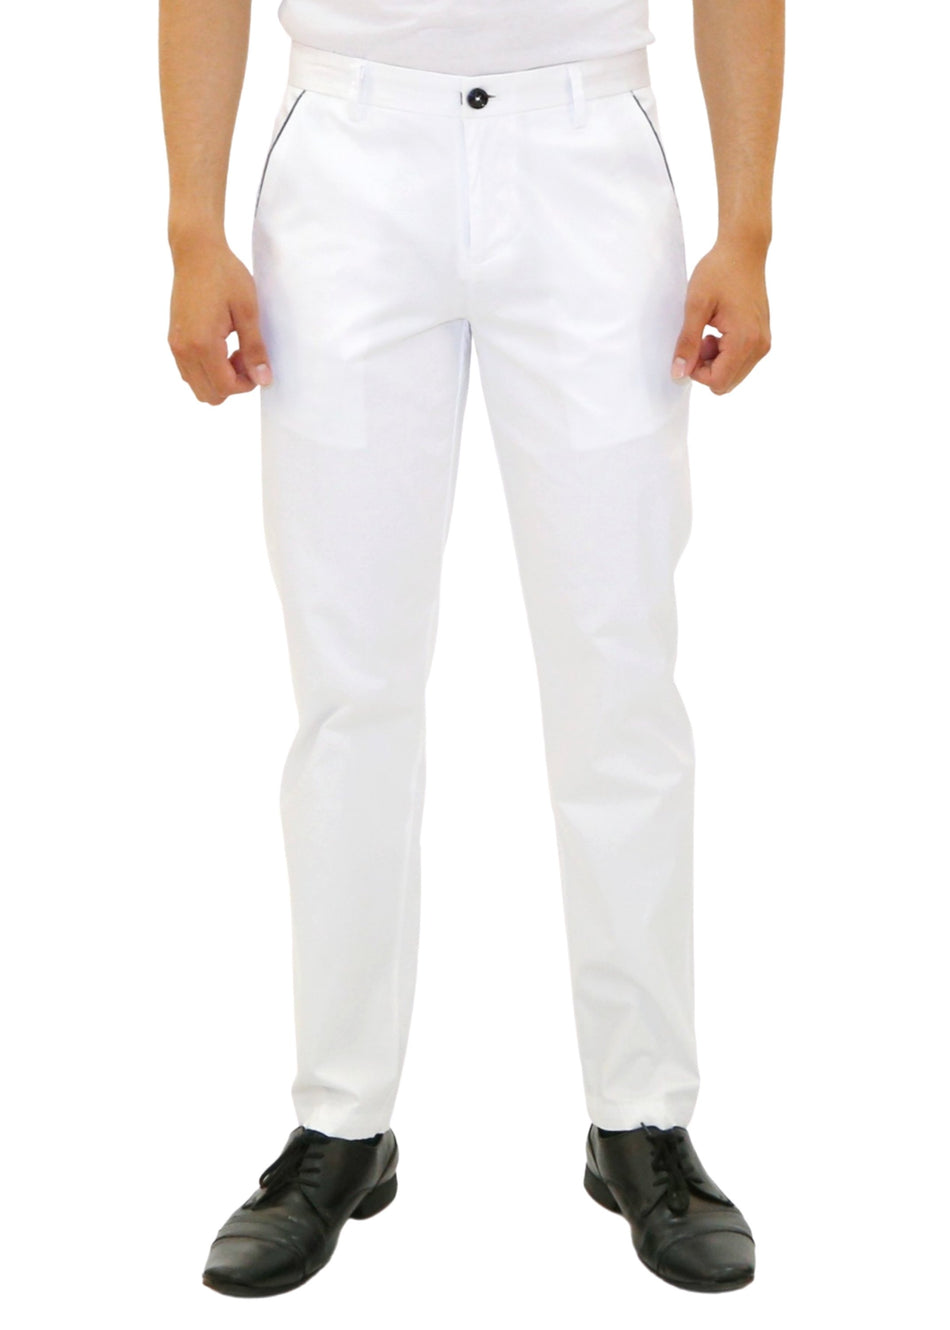 183122 - White Long Pants